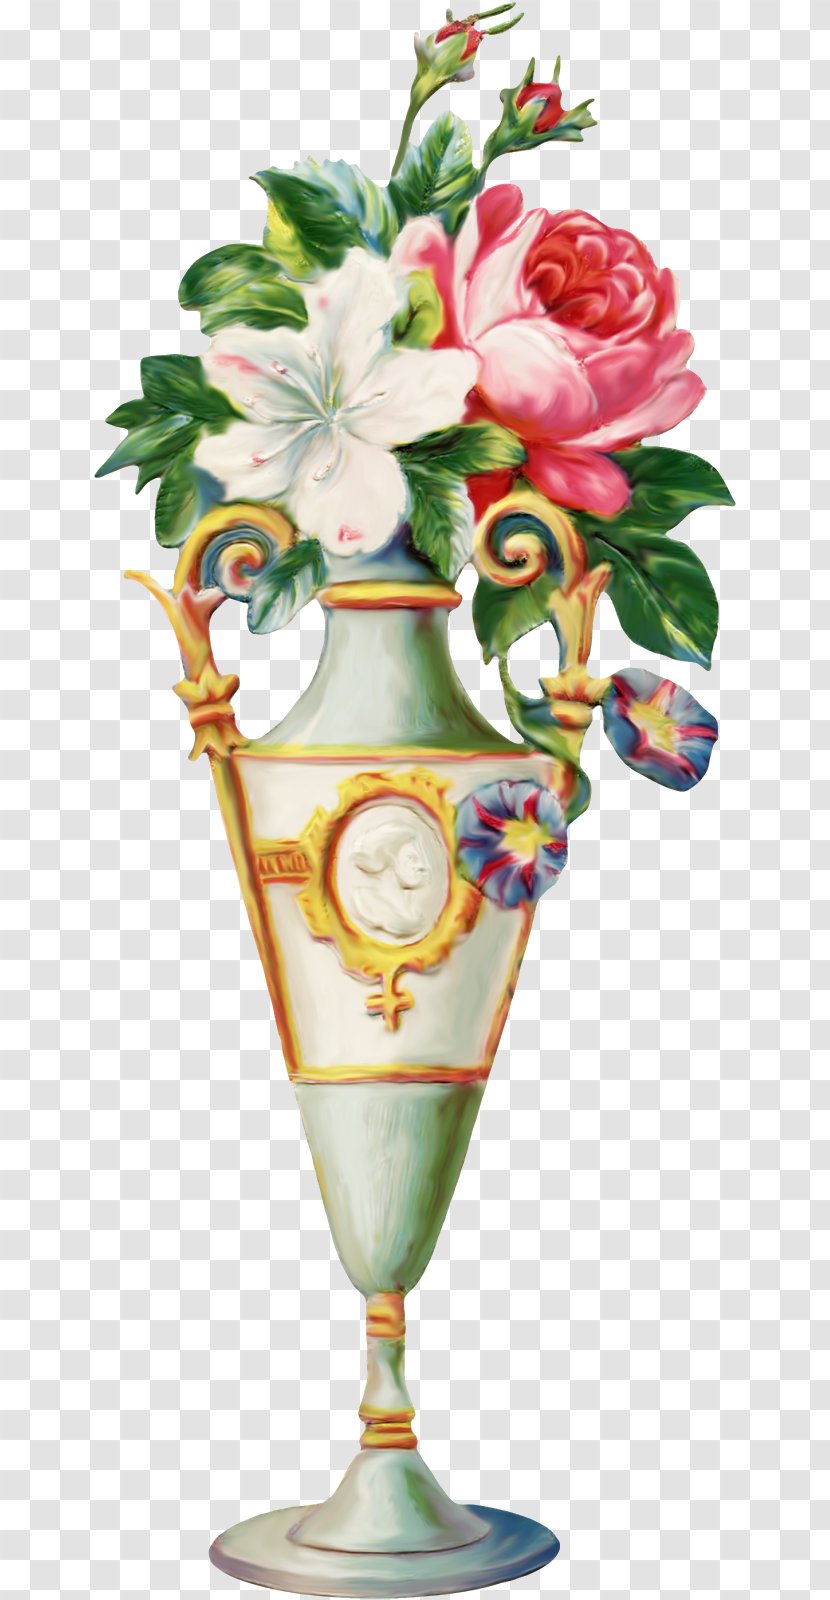 Vase Of Flowers Victorian Era Floral Design - Vintage Transparent PNG